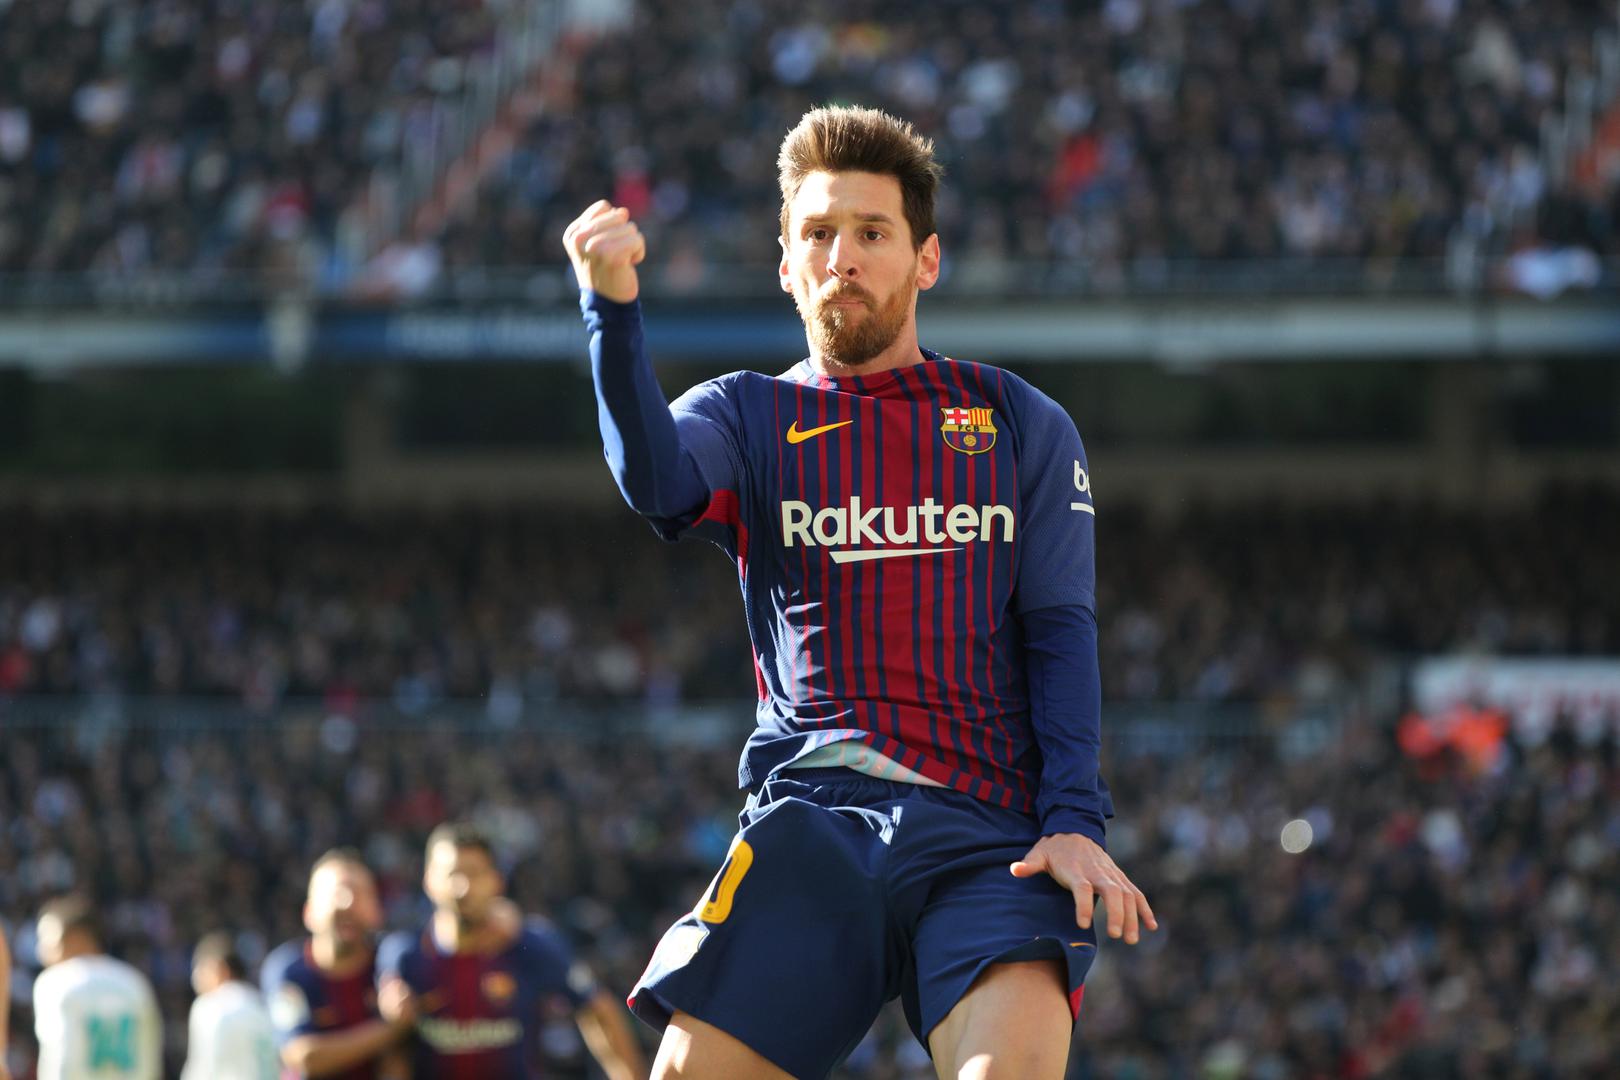 Pomoću toga izračunali smo da bi Lionel Messi prosječnu hrvatsku plaću, koja iznosi 5586 kuna, zaradi za 35 minuta i 49 sekundi! 